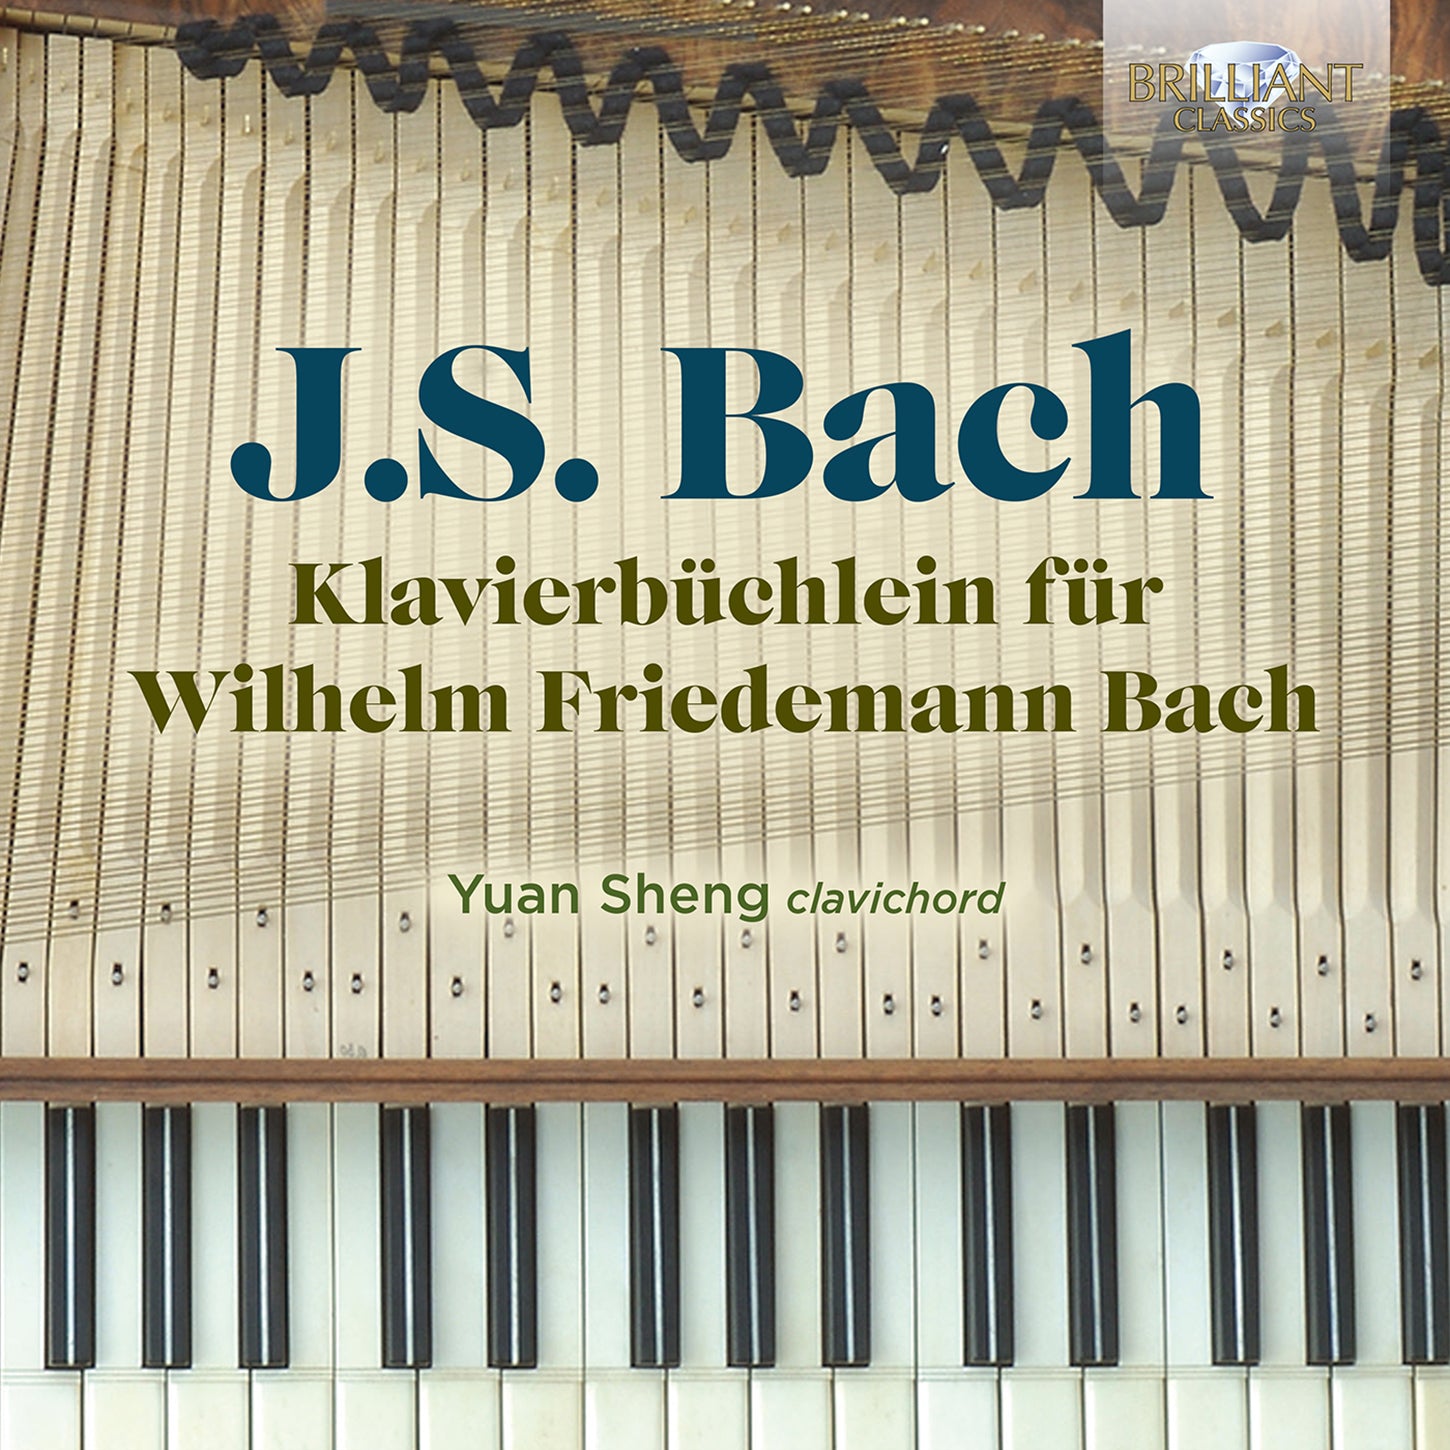 J.S. Bach: Klavierbüchlein für Wilhelm Friedemann Bach [Entire] / Yuan Sheng